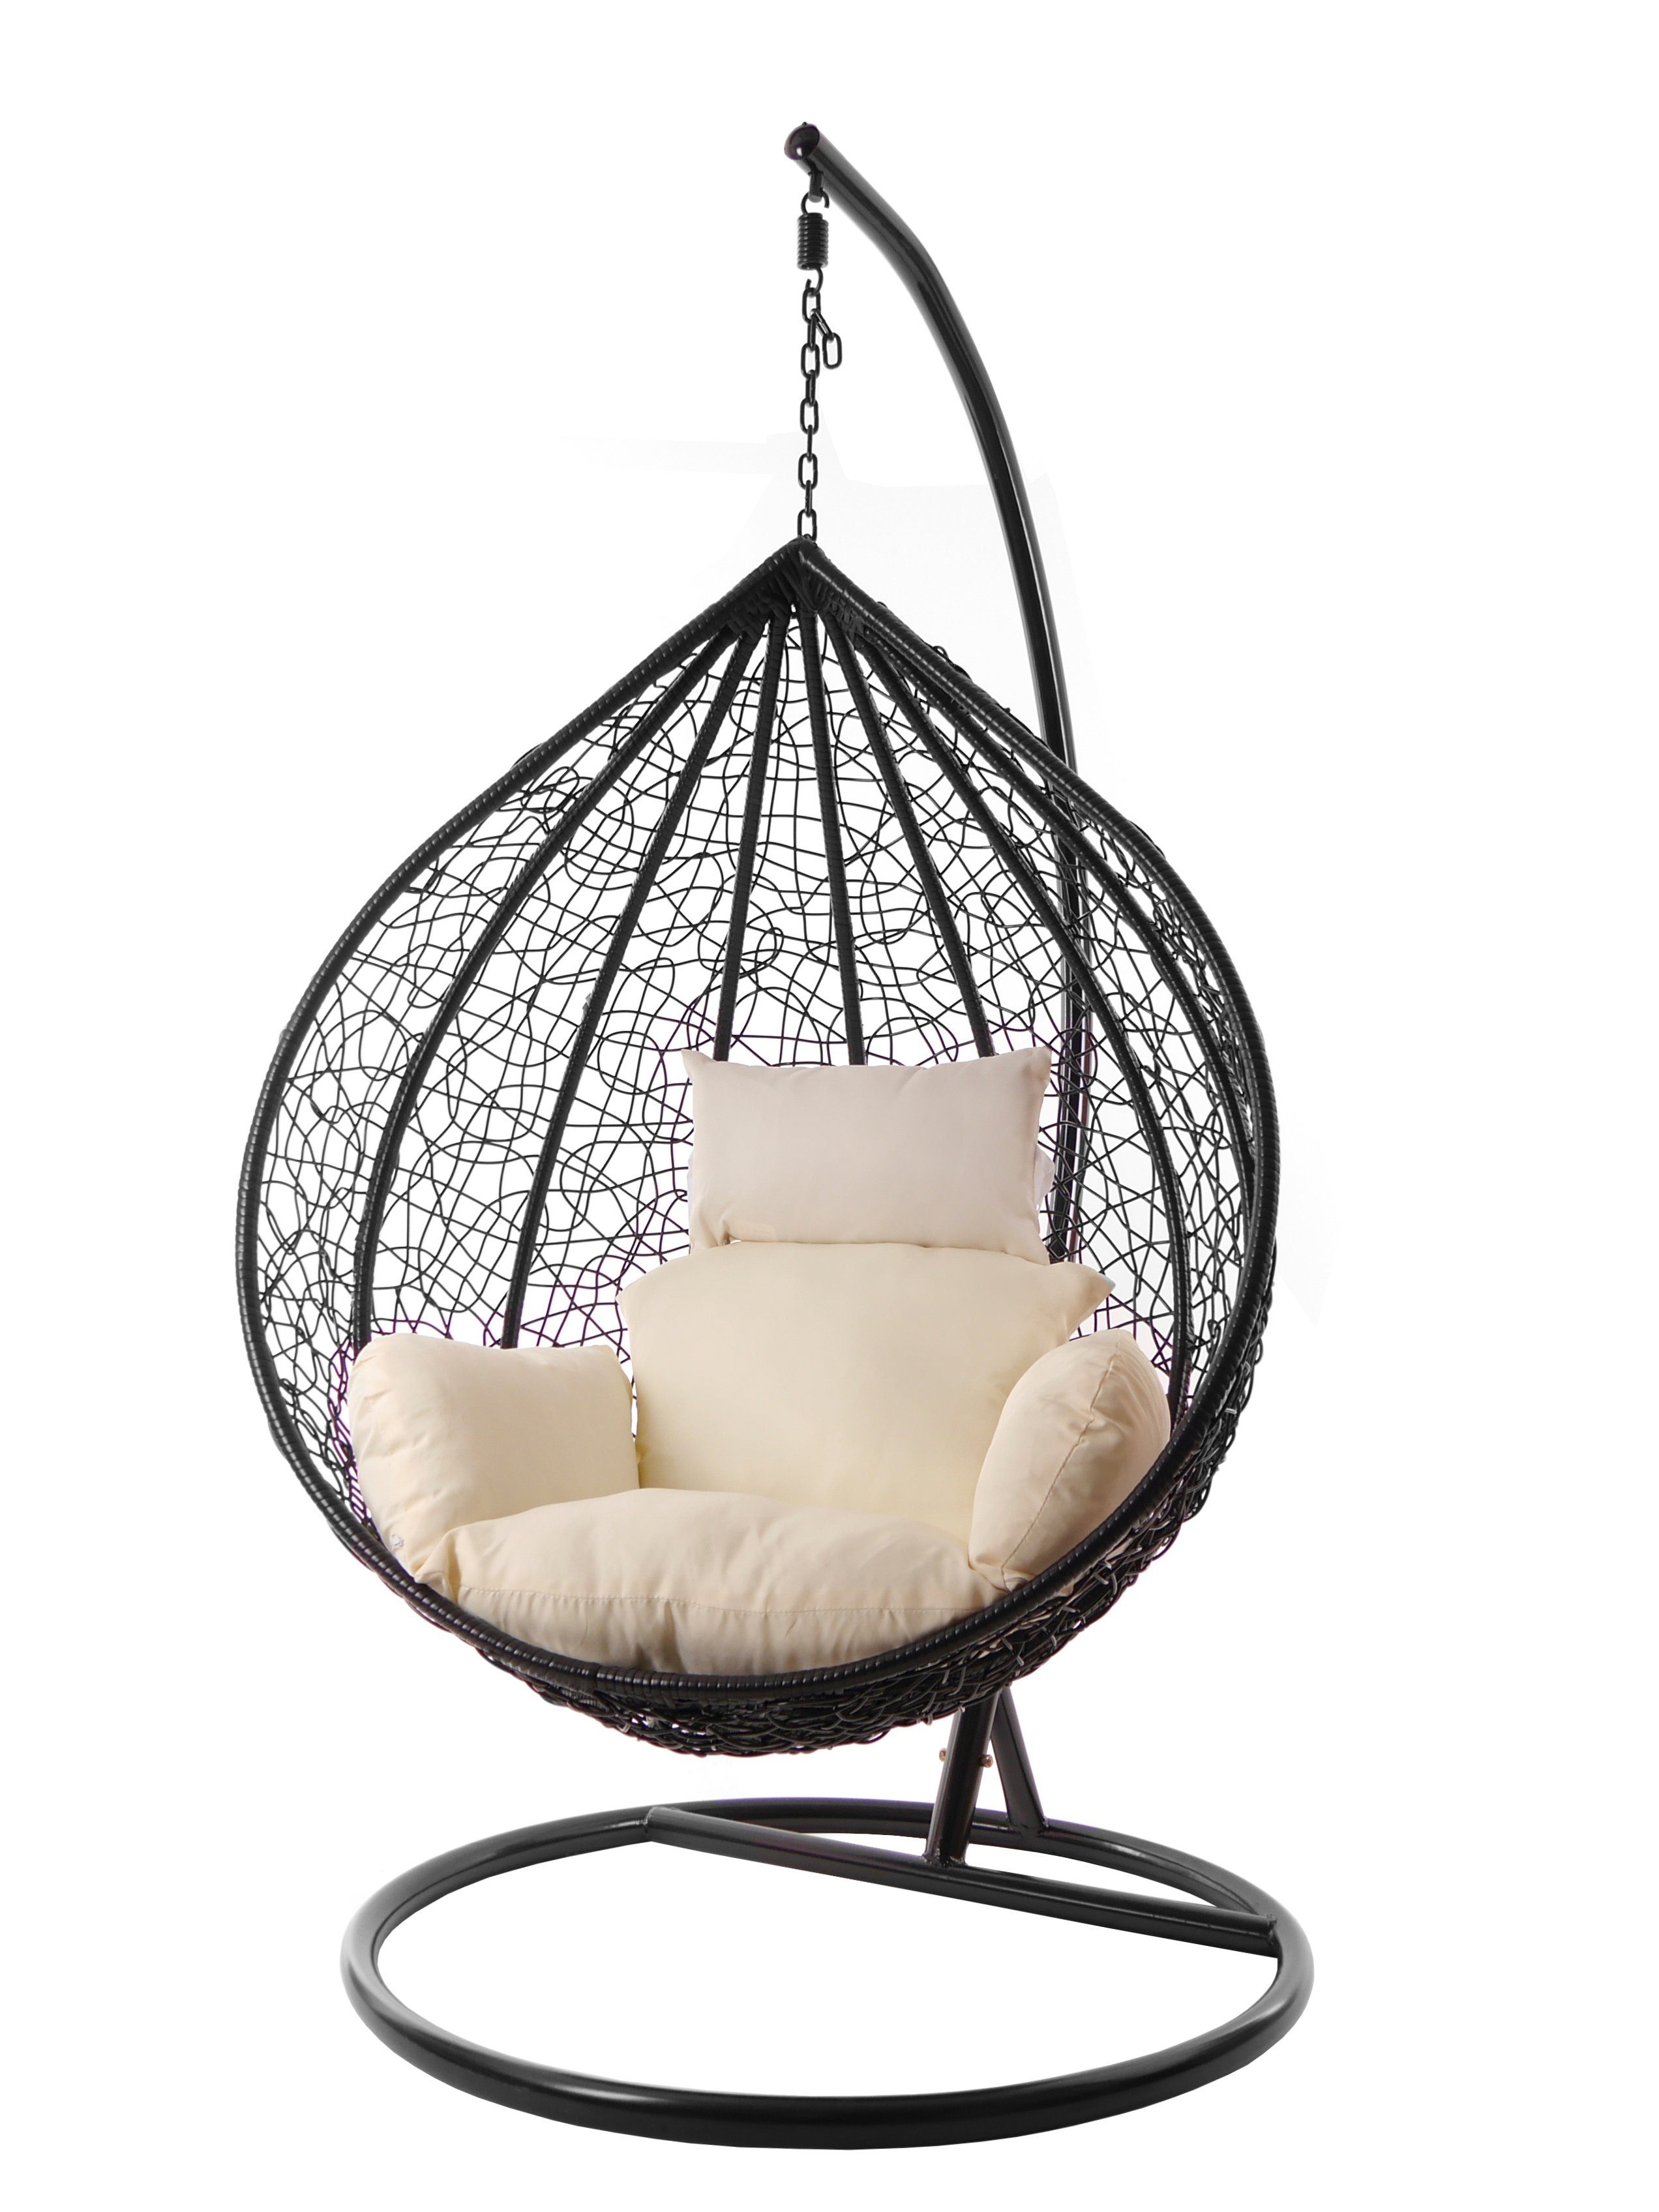 KIDEO Hängesessel Hängesessel MANACOR Kissen ivory) (0050 verschiedene edel, Swing Chair, und XXL Farben Nest-Kissen, inklusive, Gestell elfenbein schwarz